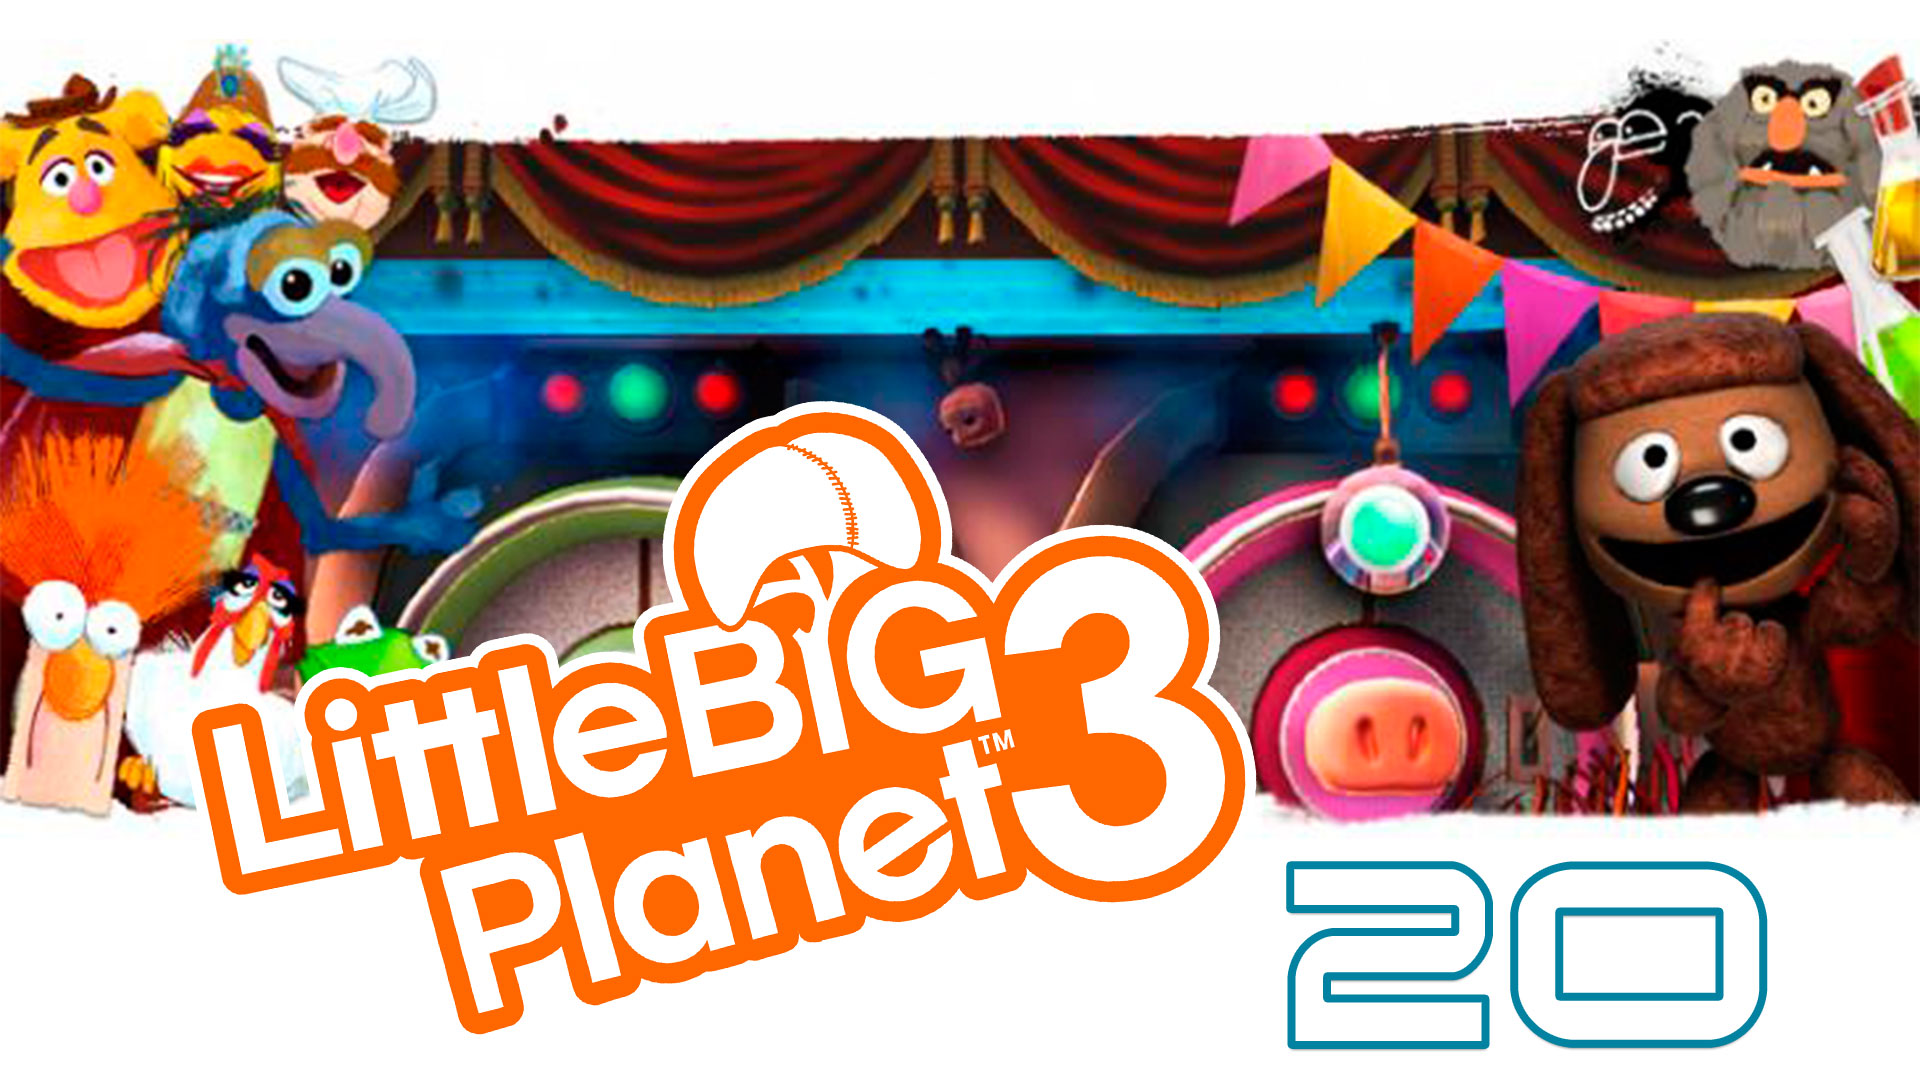 LittleBigPlanet 3 - Сезон 2 - Кооператив - Маппеты ч. 1 - Прохождение игры [#20] | PS4 (2016 г.)